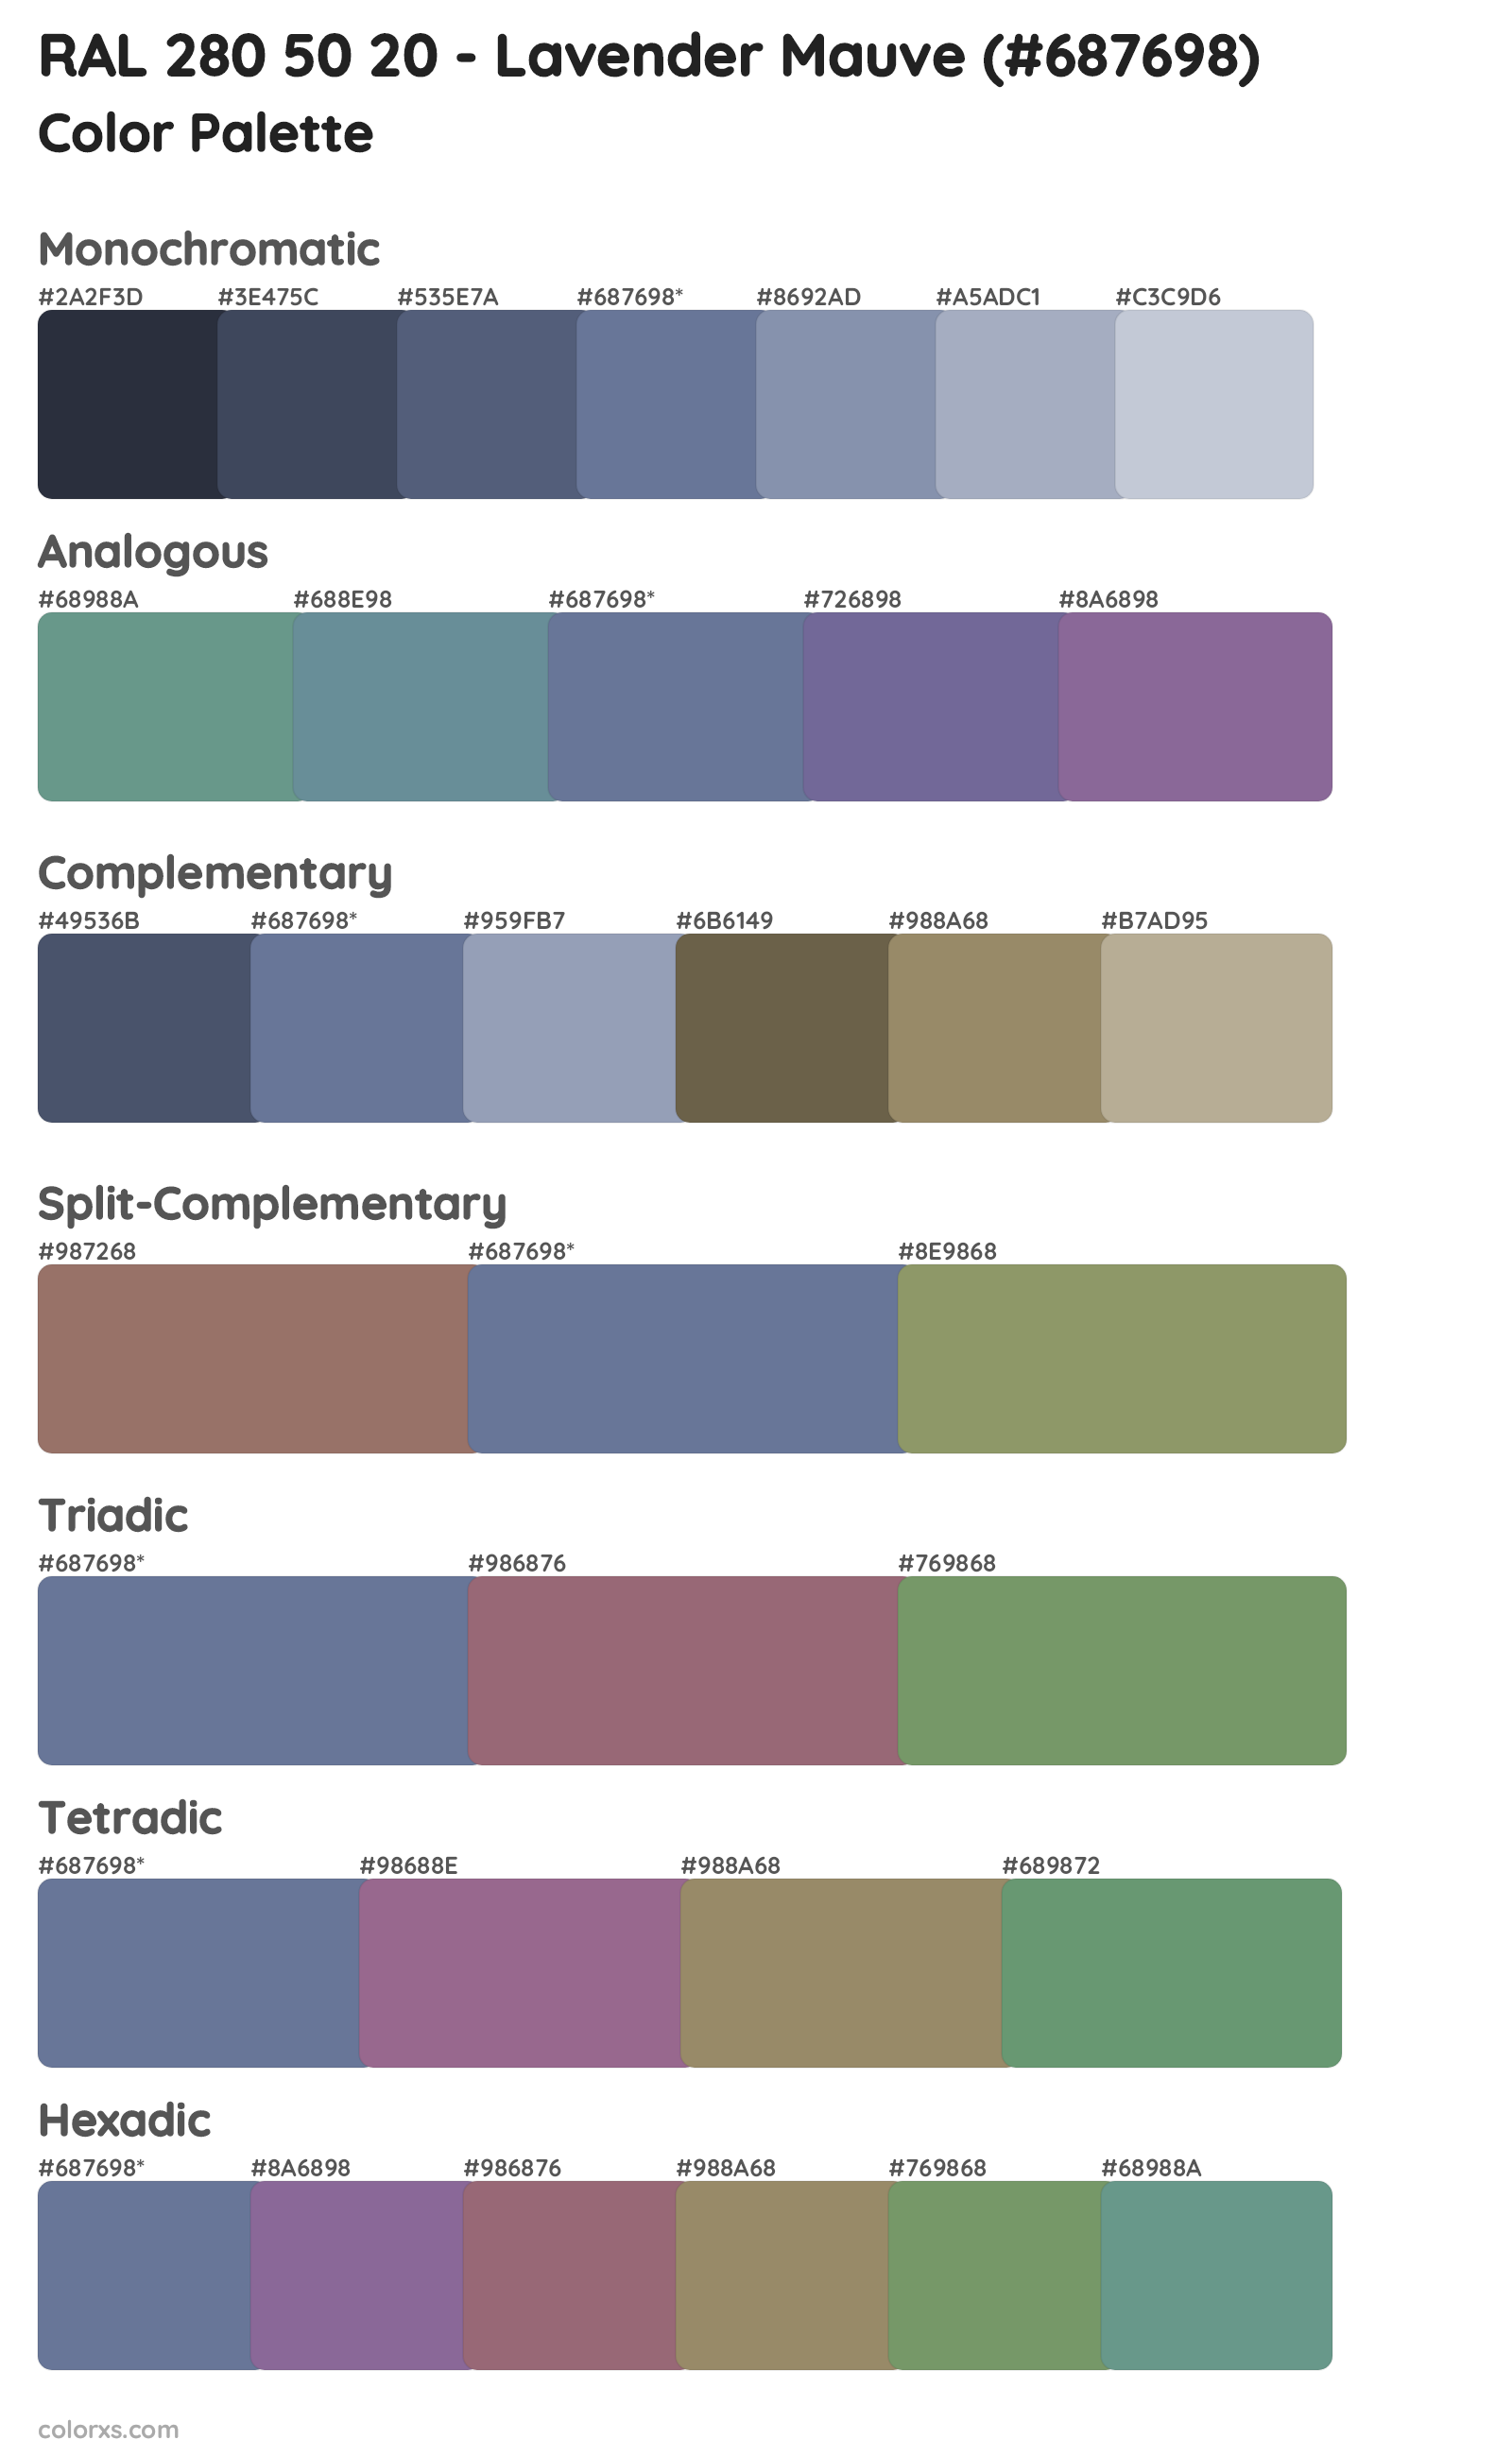 RAL 280 50 20 - Lavender Mauve Color Scheme Palettes